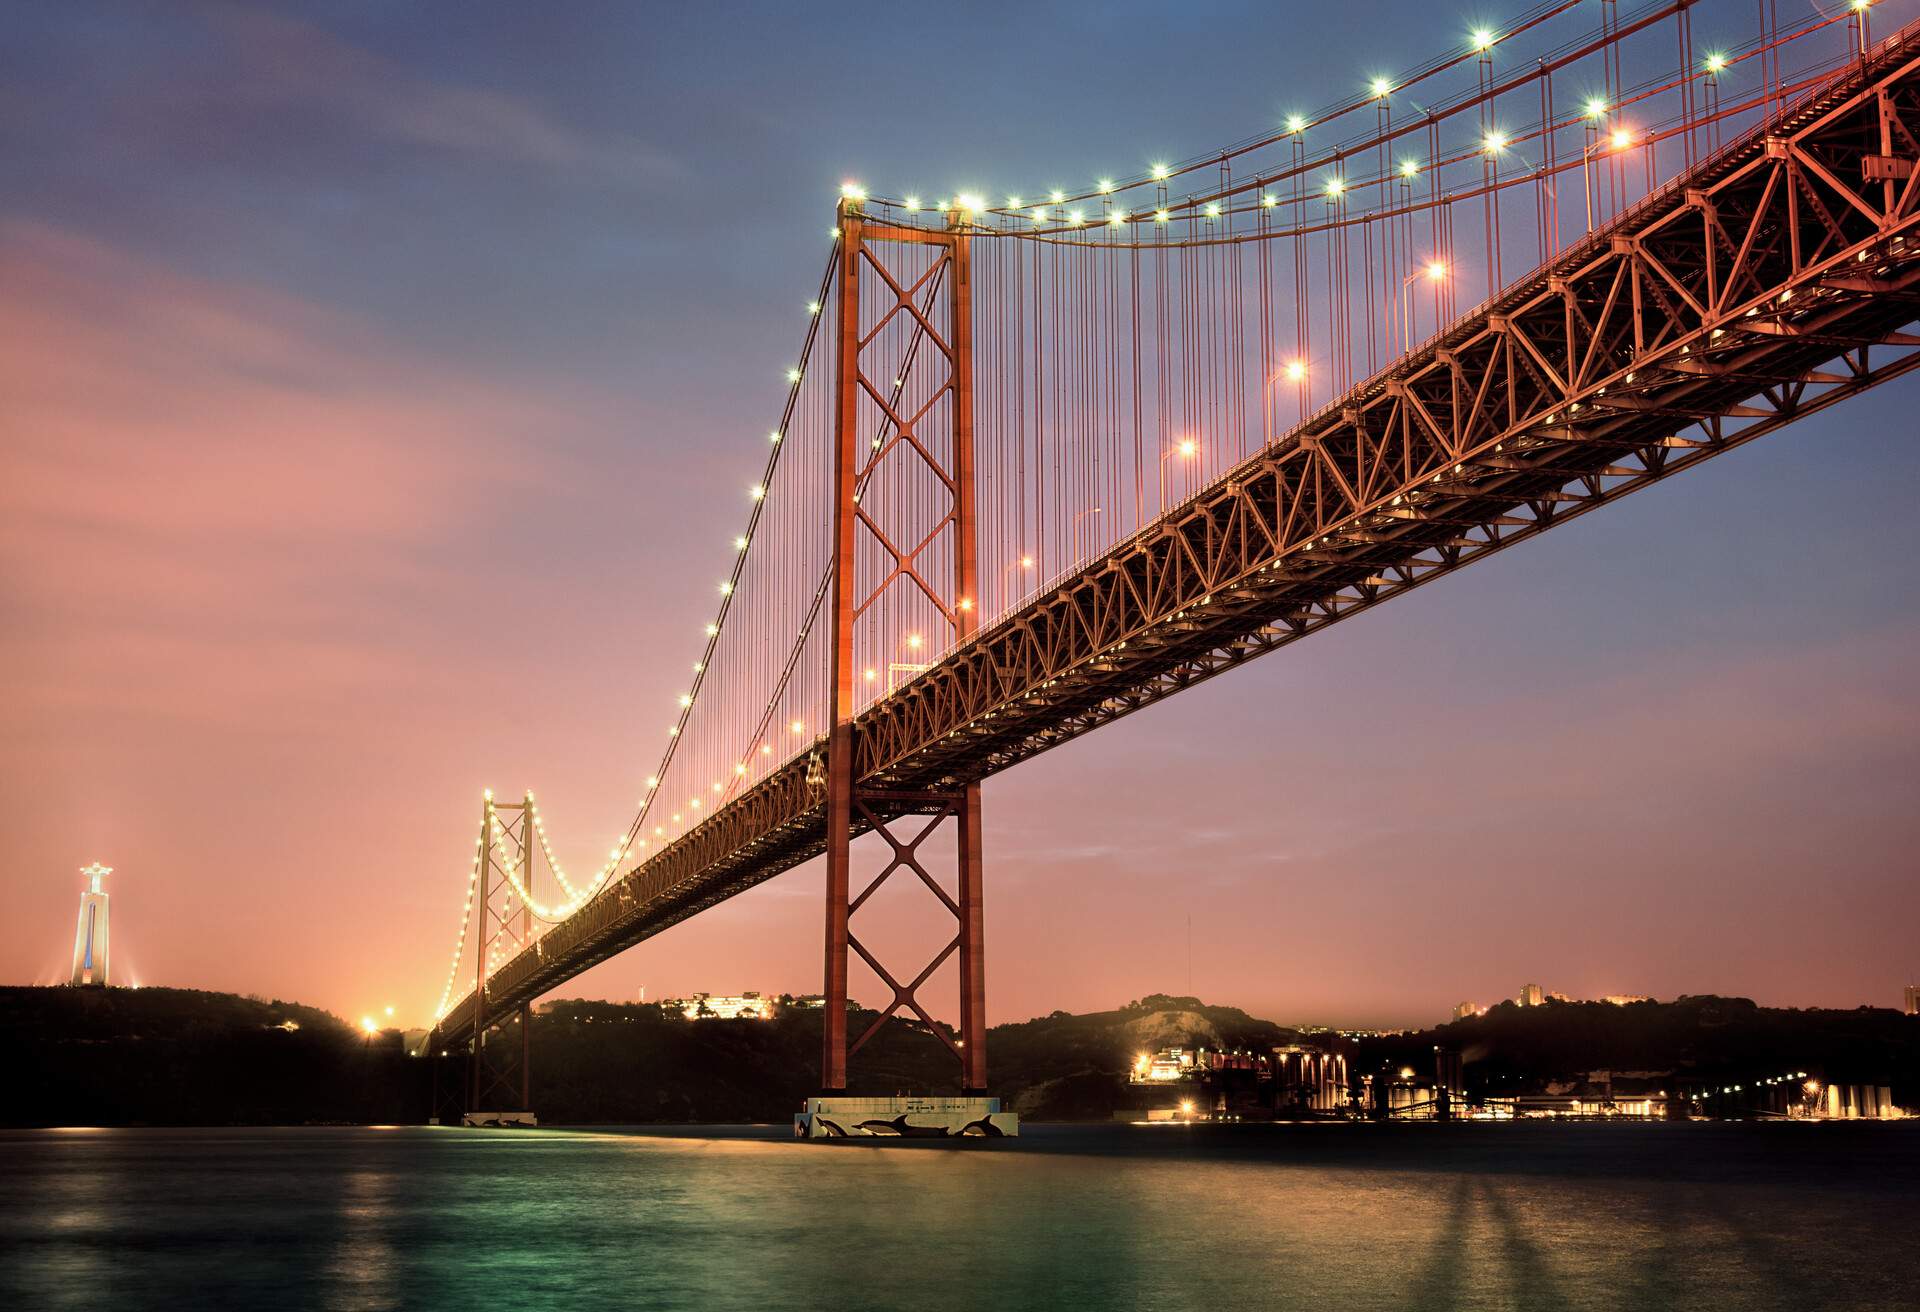 DEST_PORTUGAL_Lisbon_BRIDGE_TAGUS-RIVER_GettyImages-1068111510_Universal